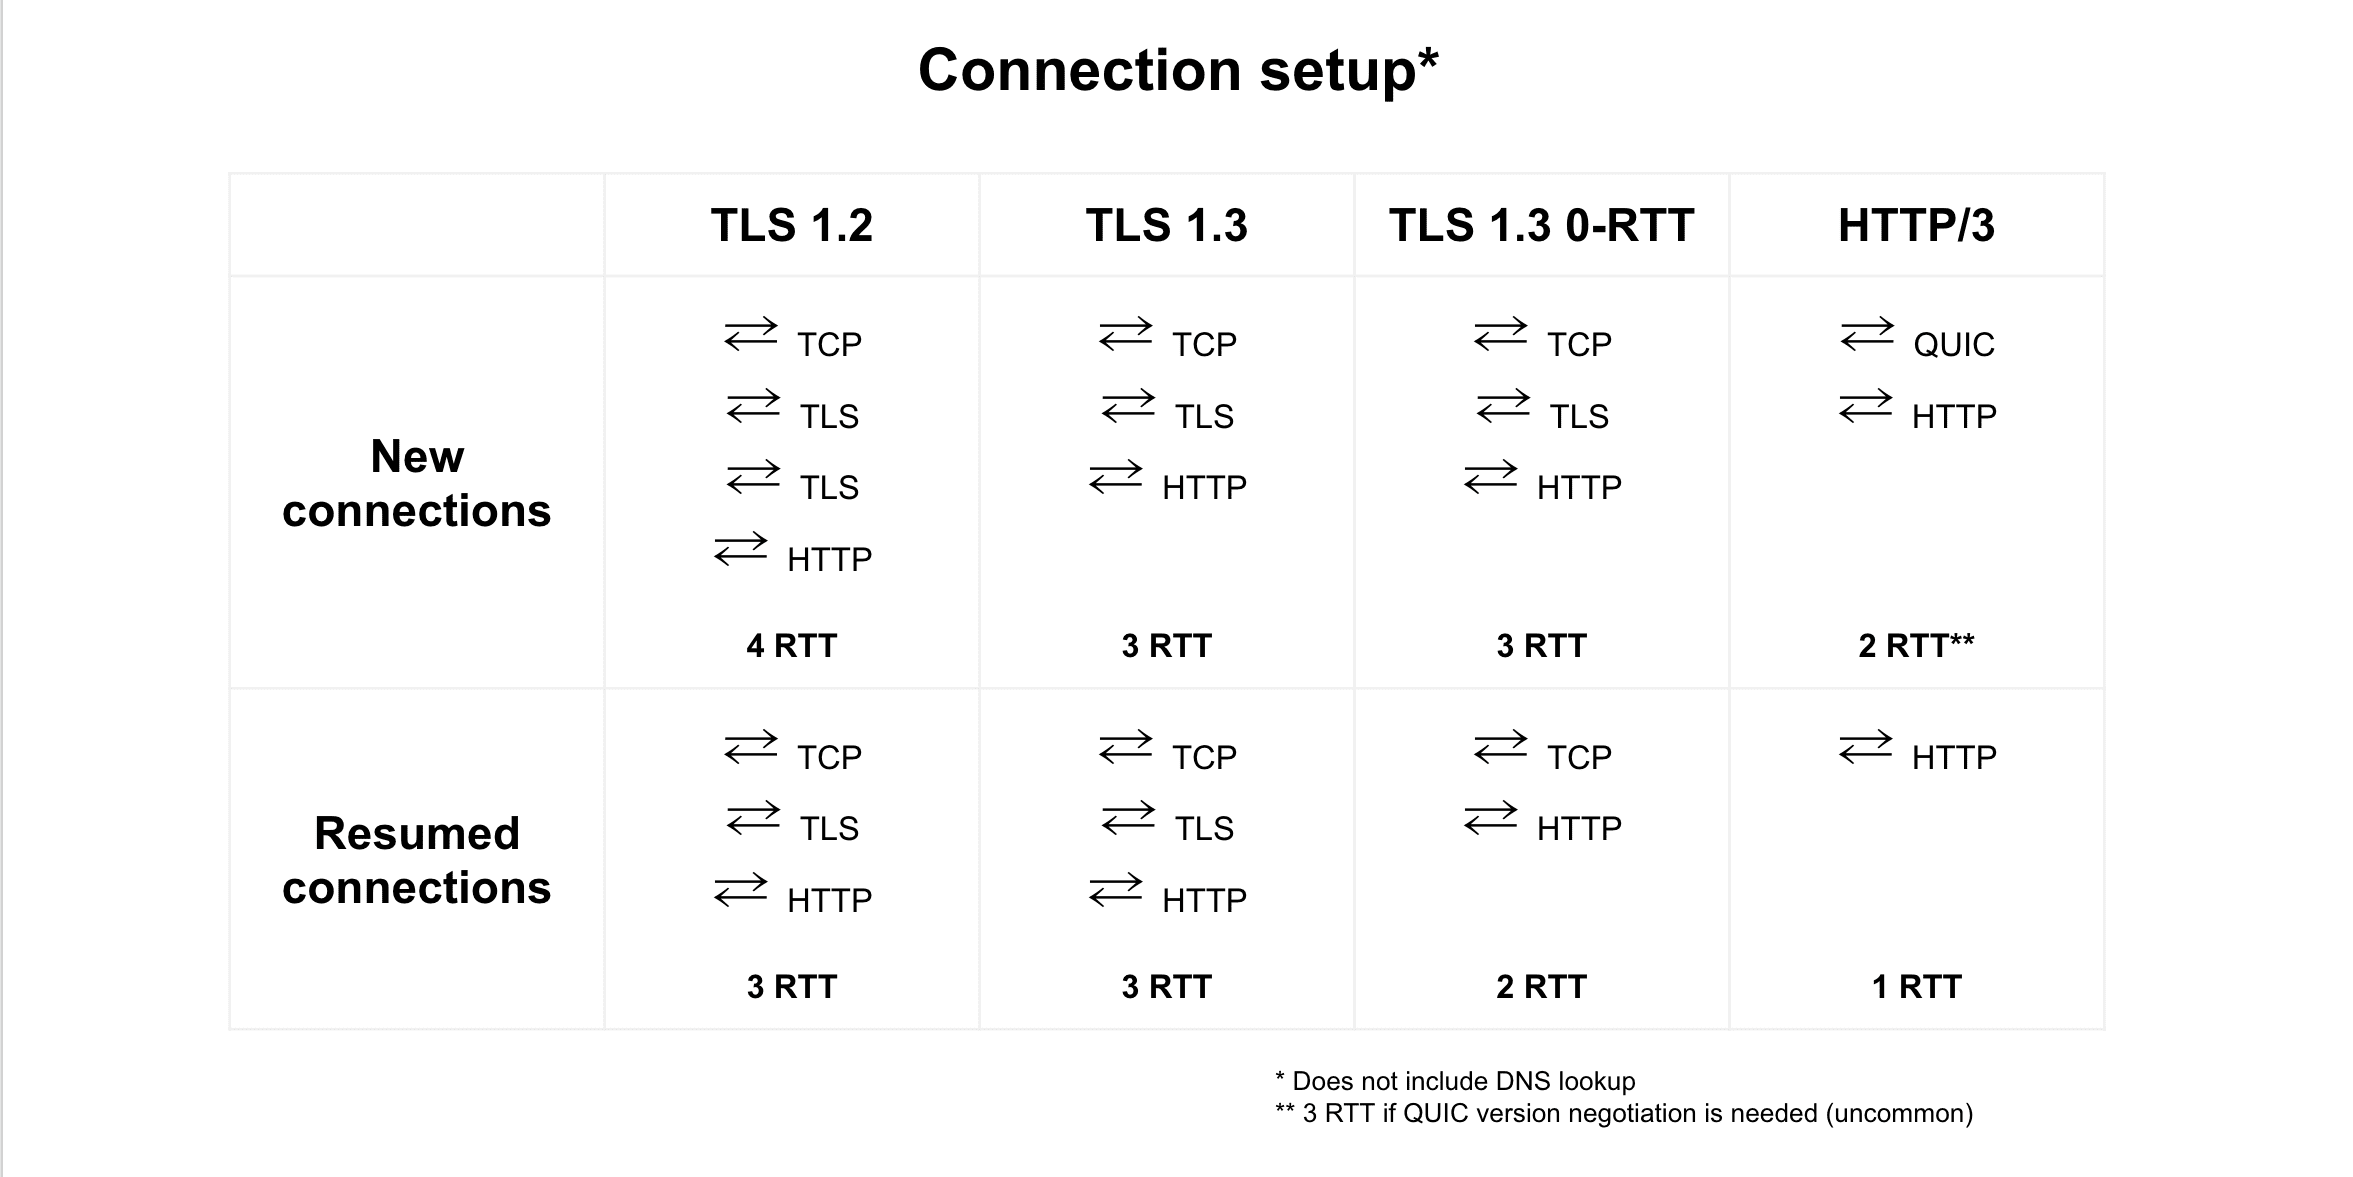 TLS 1.2, TLS 1.3, TLS 1.3 0-RTT ve HTTP/3 arasında bağlantı devam ettirme karşılaştırması